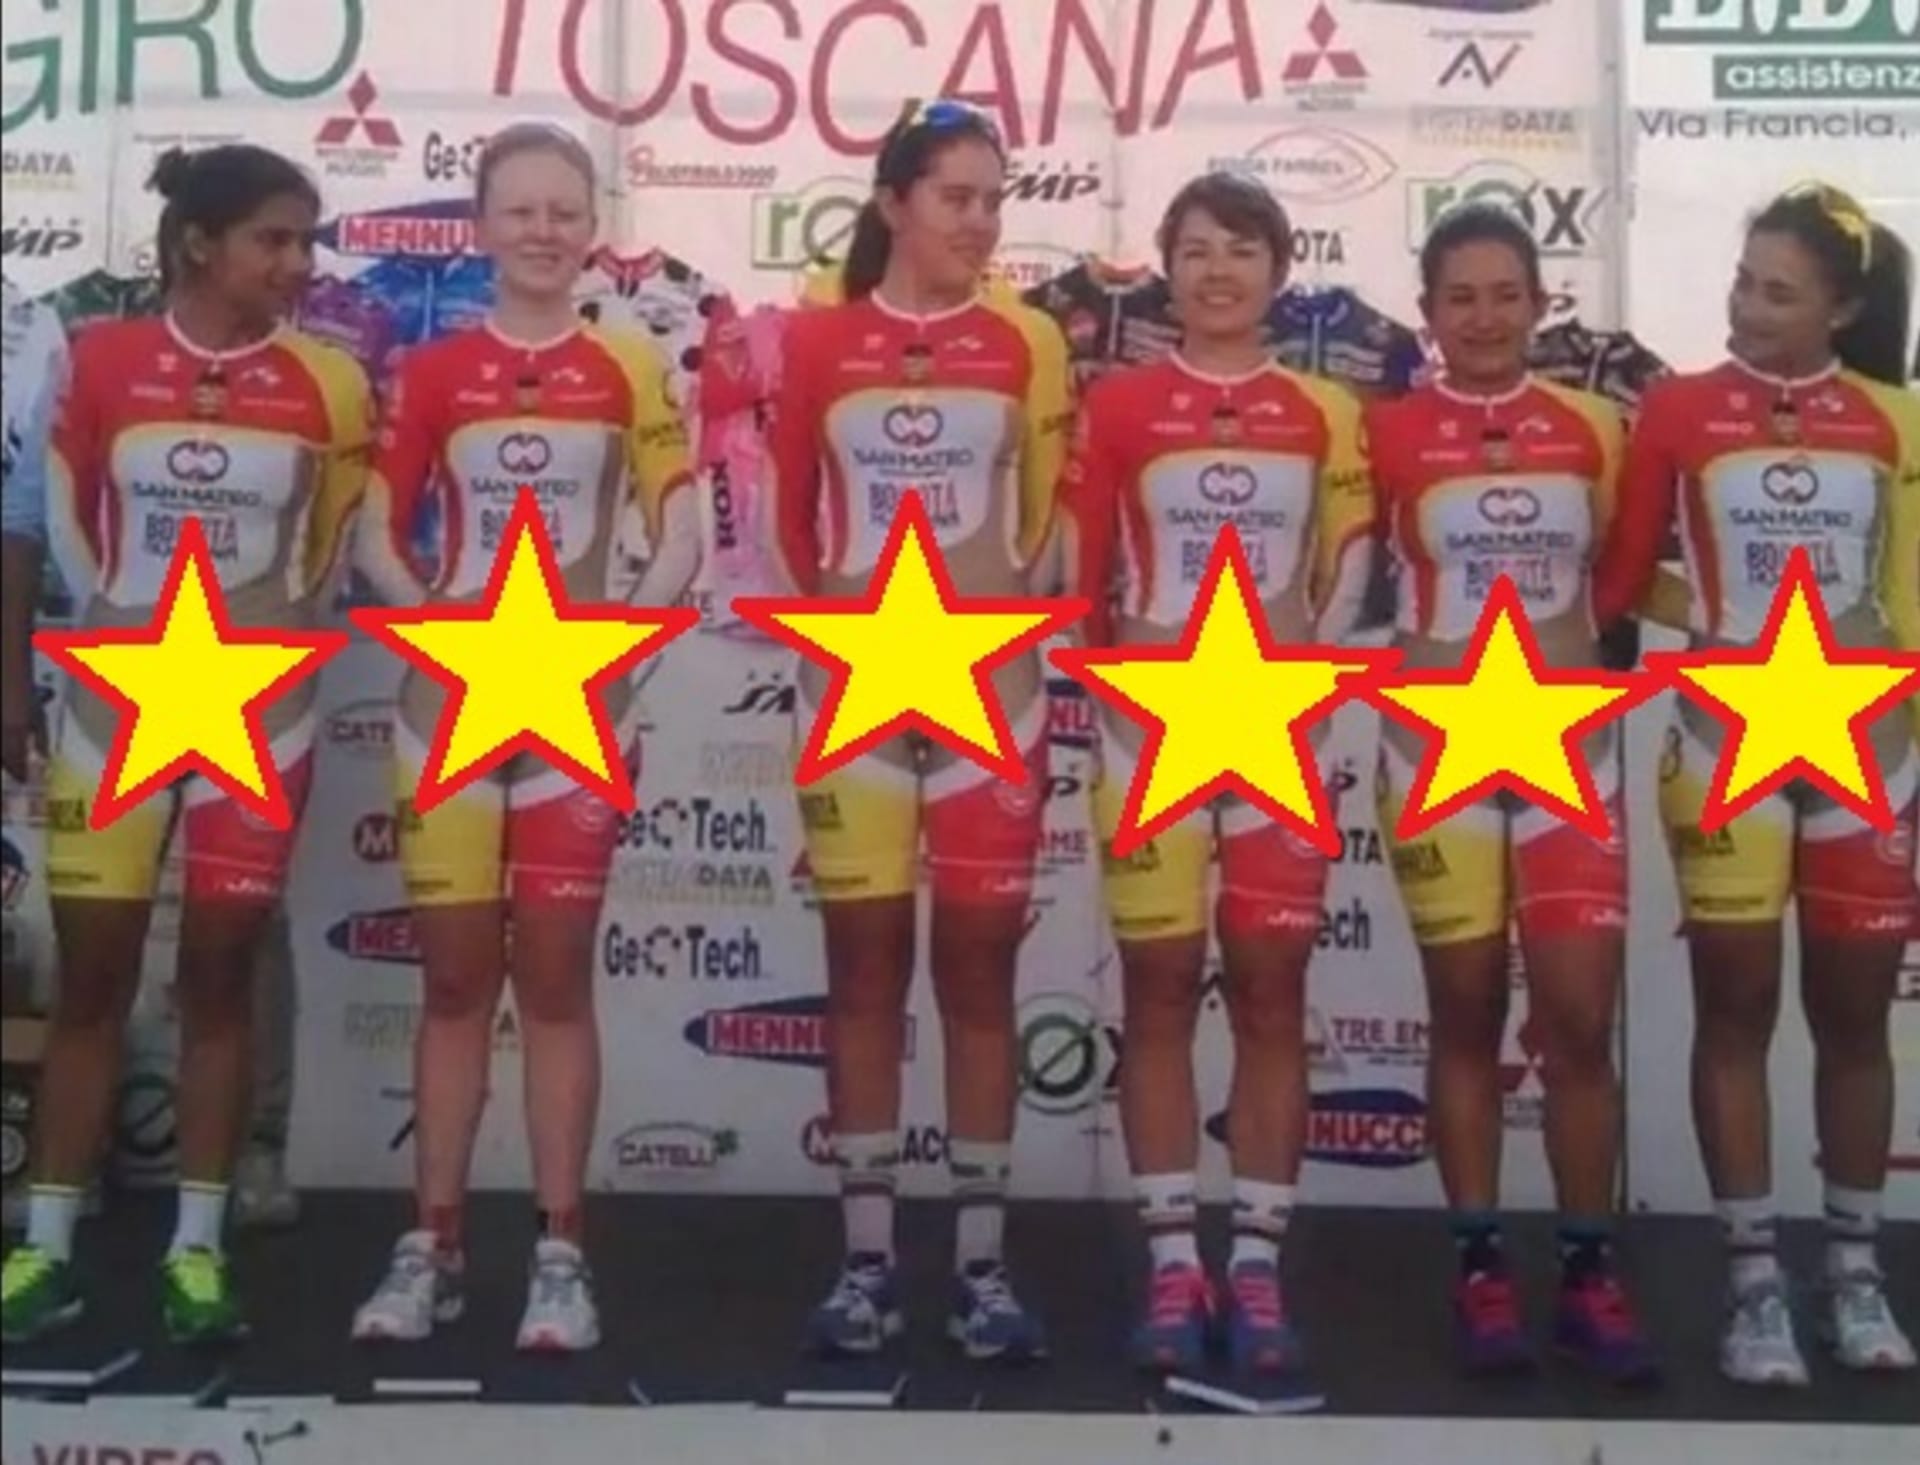 Cyklistické dresy týmu Bogota Humana jsou dosti kontroverzní...